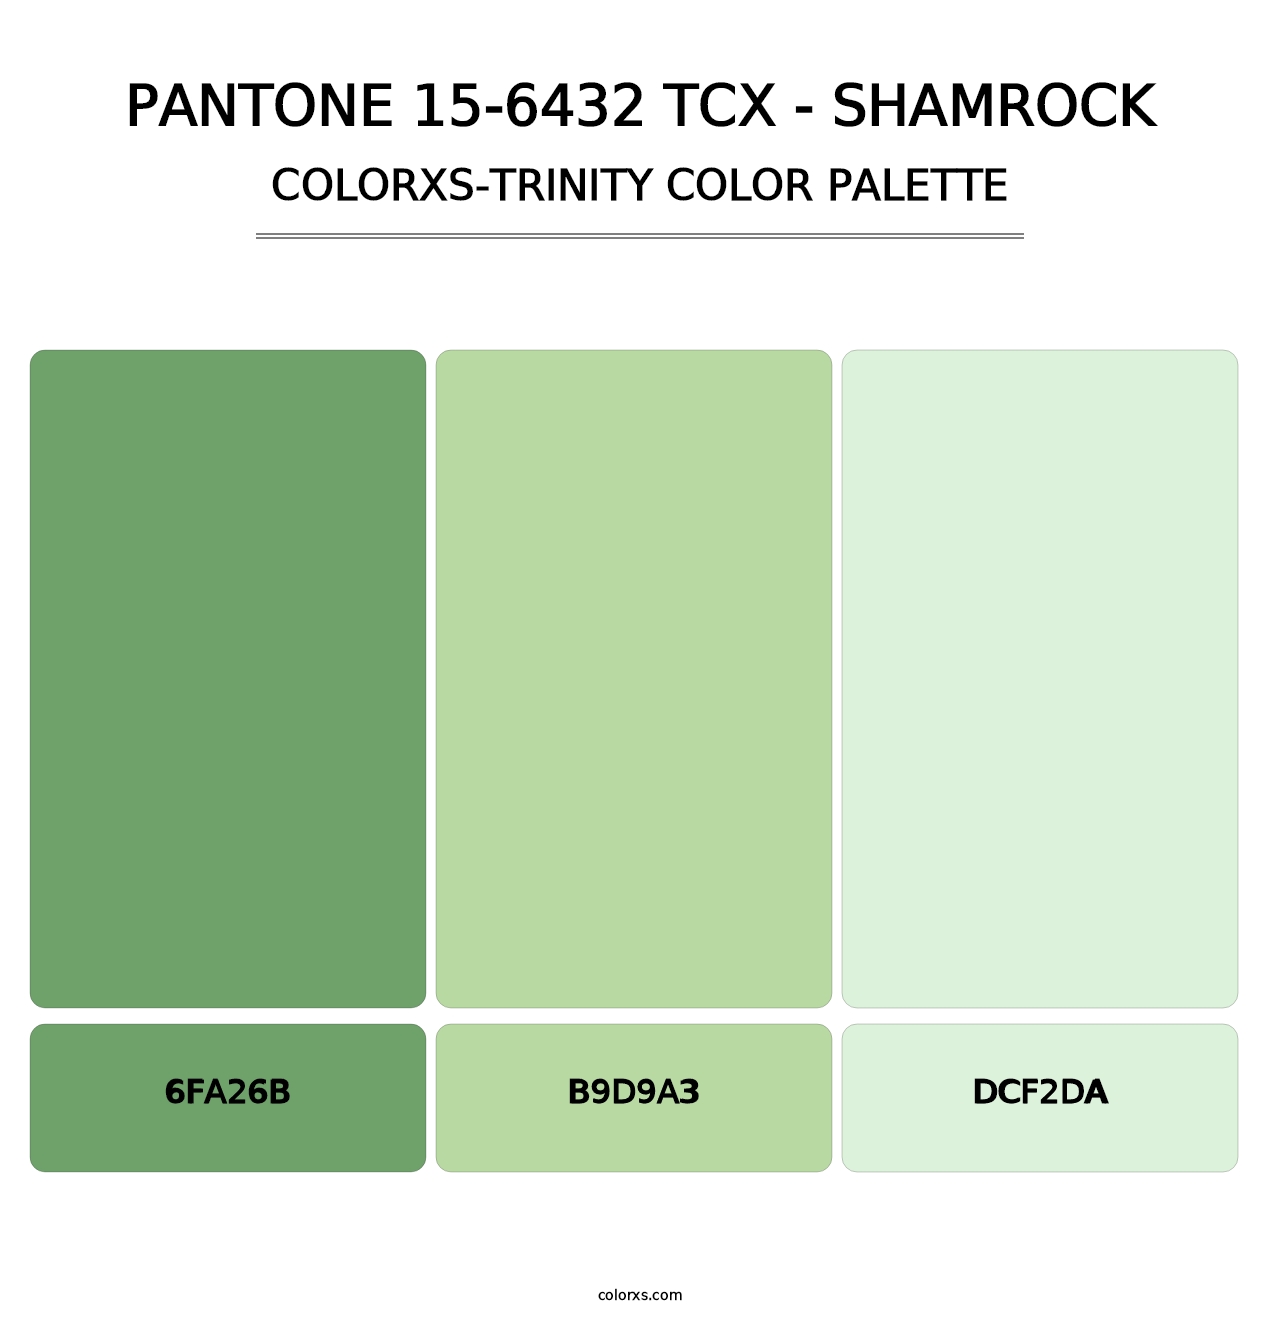 PANTONE 15-6432 TCX - Shamrock - Colorxs Trinity Palette